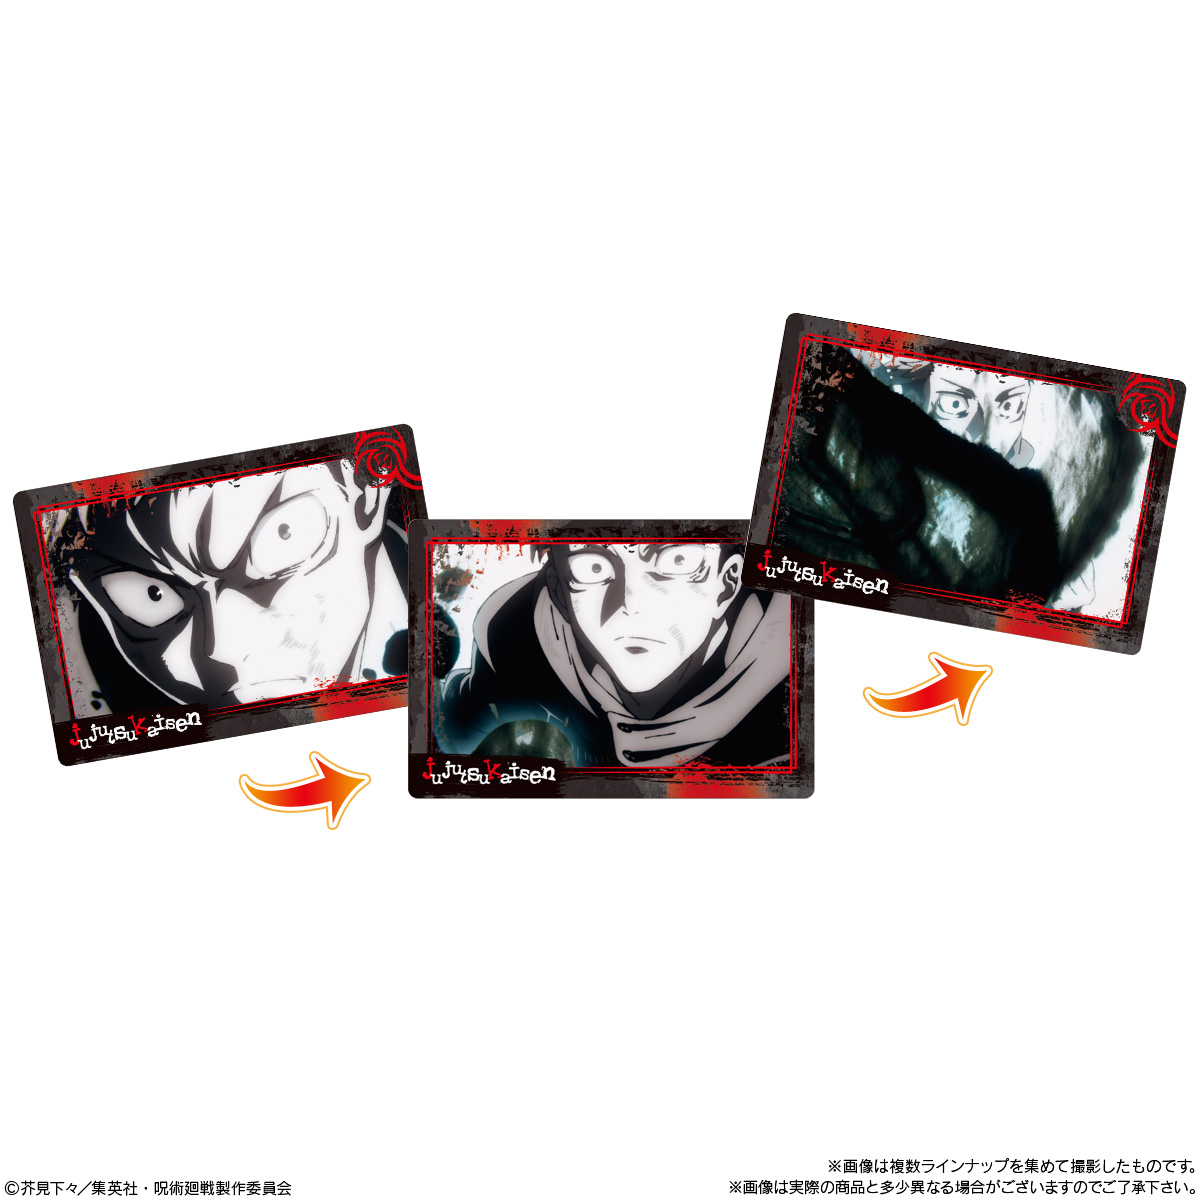 【食玩】呪術廻戦『呪術廻戦 PLAY BACKカードチョコスナック』10個入りBOX-010